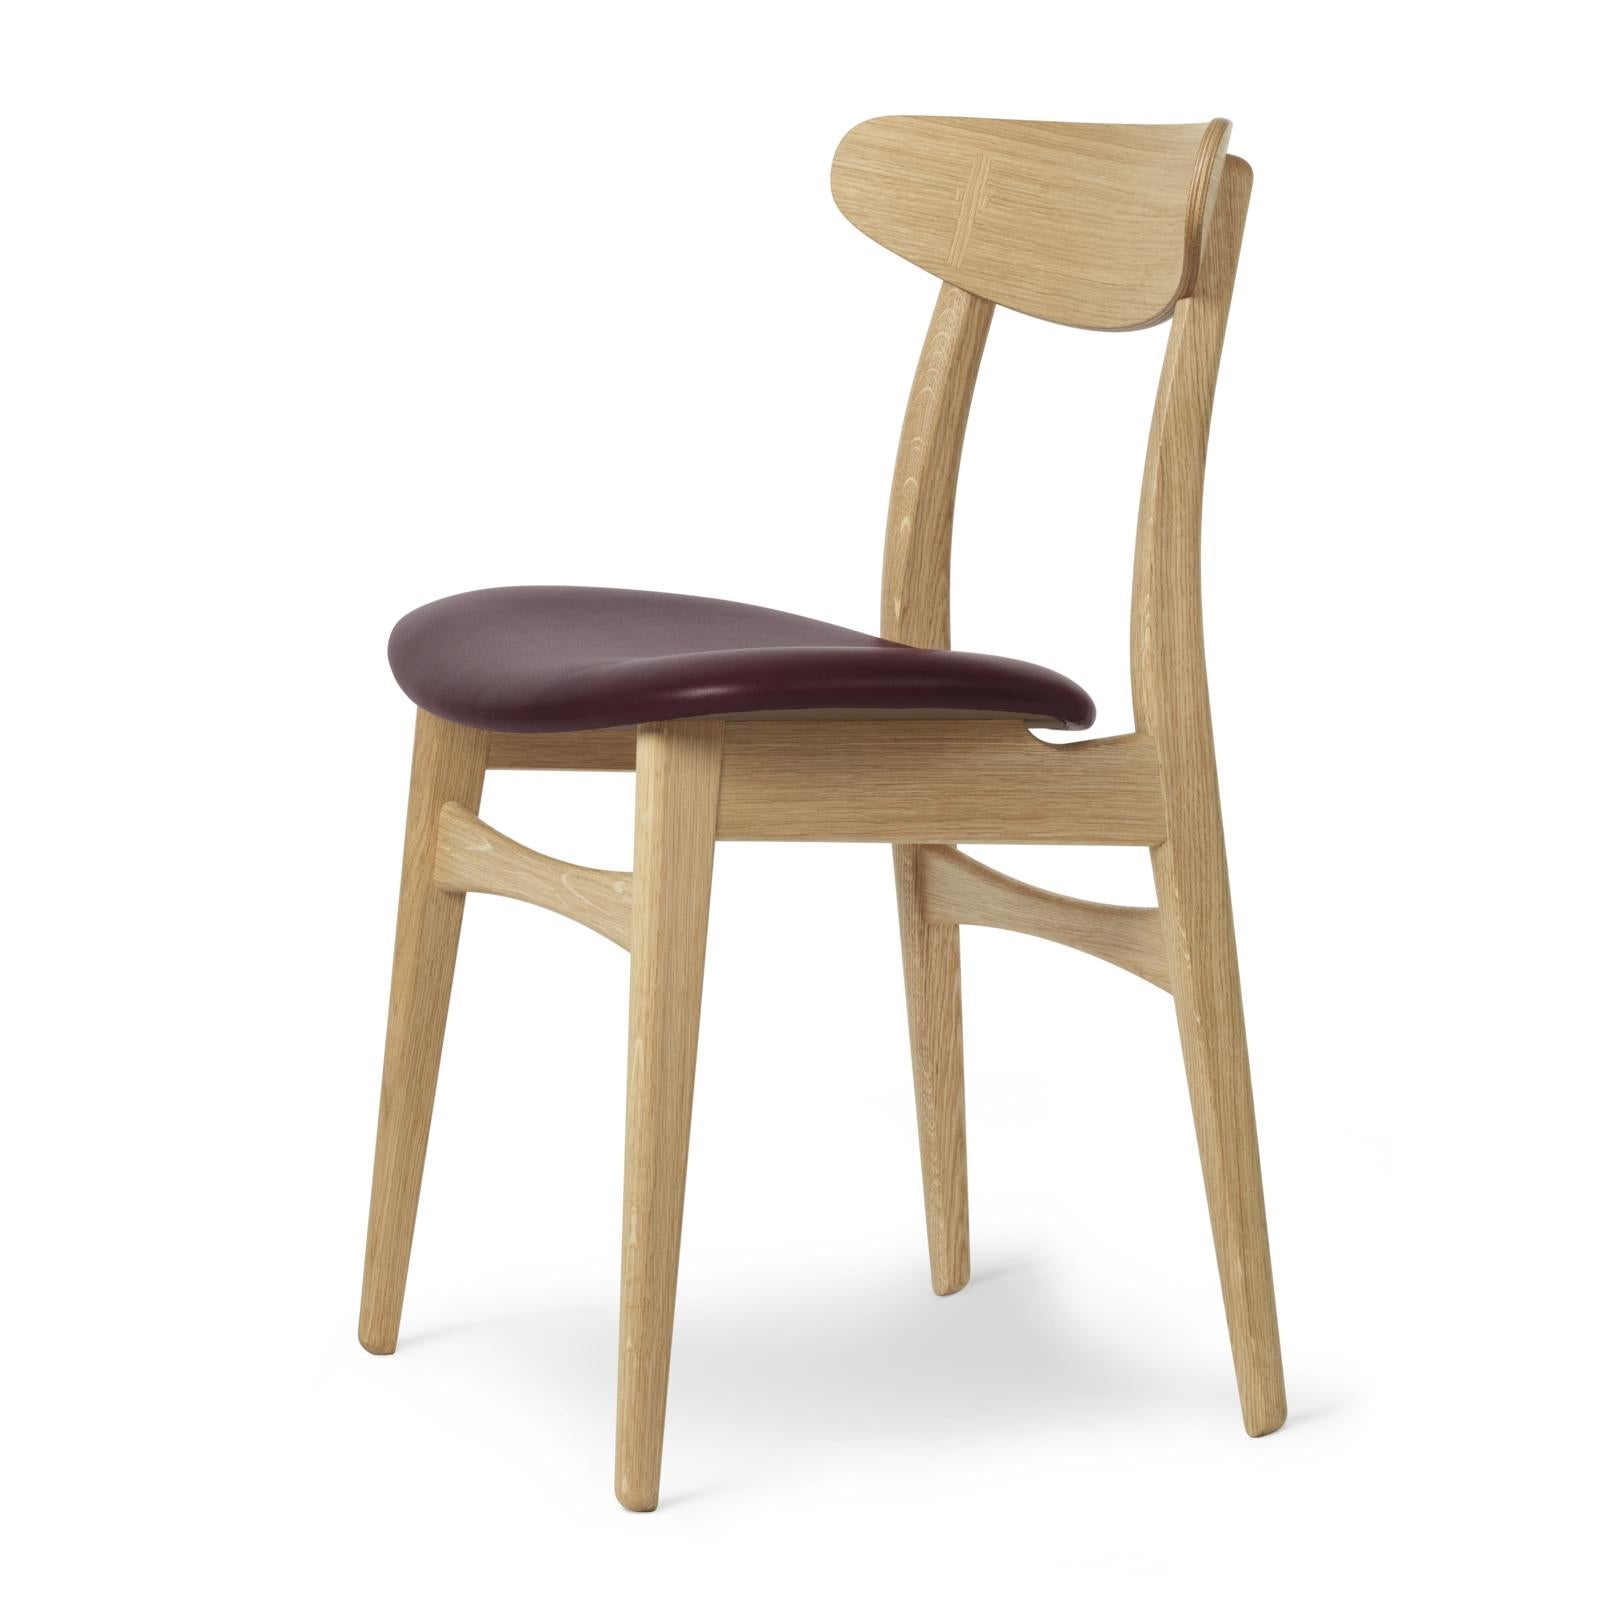 Carl Hansen CH30P -stol, oljad ek, vinröd läder